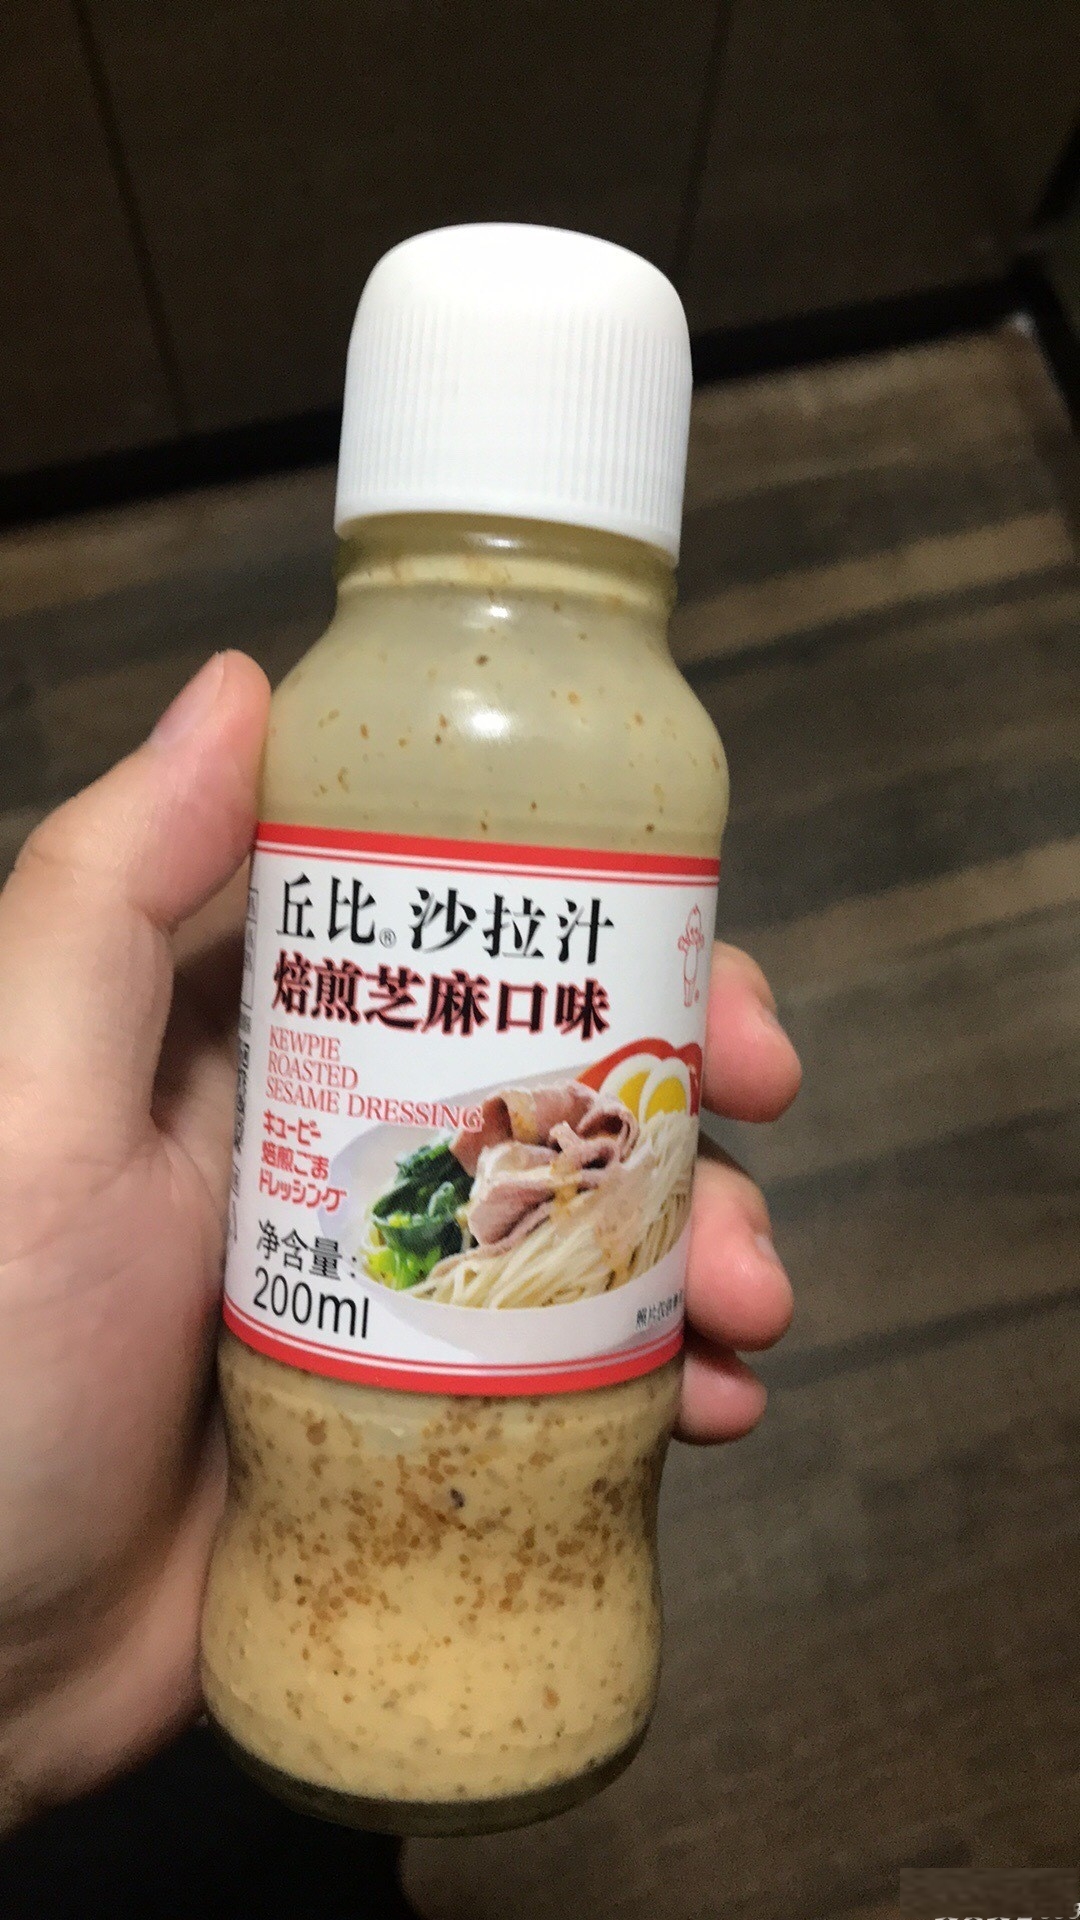 丘比 - 沙拉汁焙煎芝麻口味 (200ml) - 洪發 全店滿$399起免運費!!